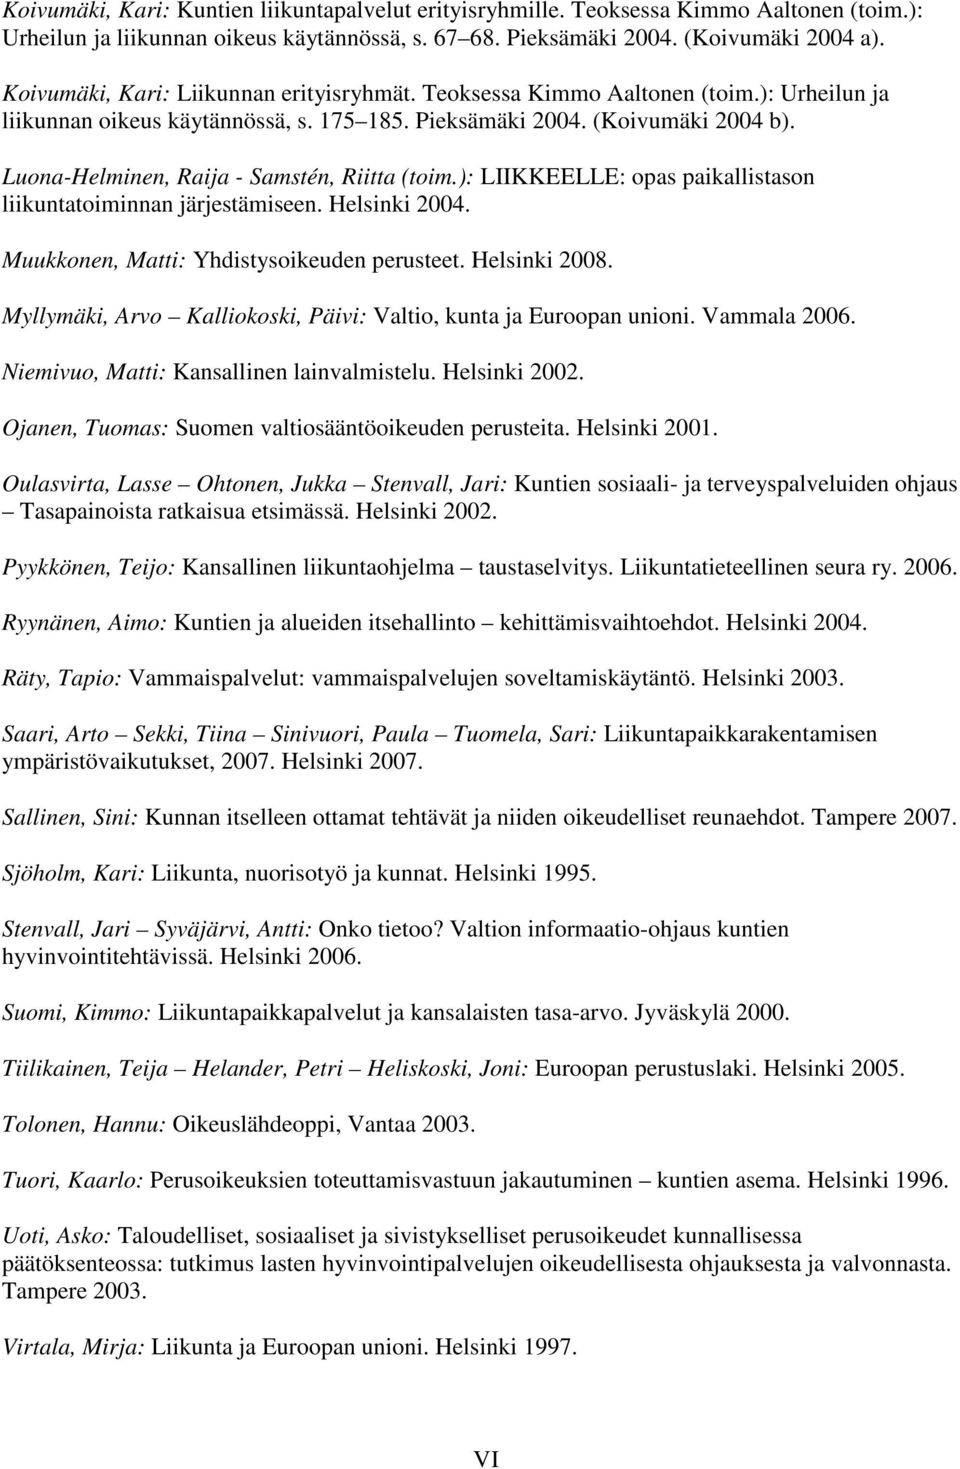 Luona-Helminen, Raija - Samstén, Riitta (toim.): LIIKKEELLE: opas paikallistason liikuntatoiminnan järjestämiseen. Helsinki 2004. Muukkonen, Matti: Yhdistysoikeuden perusteet. Helsinki 2008.